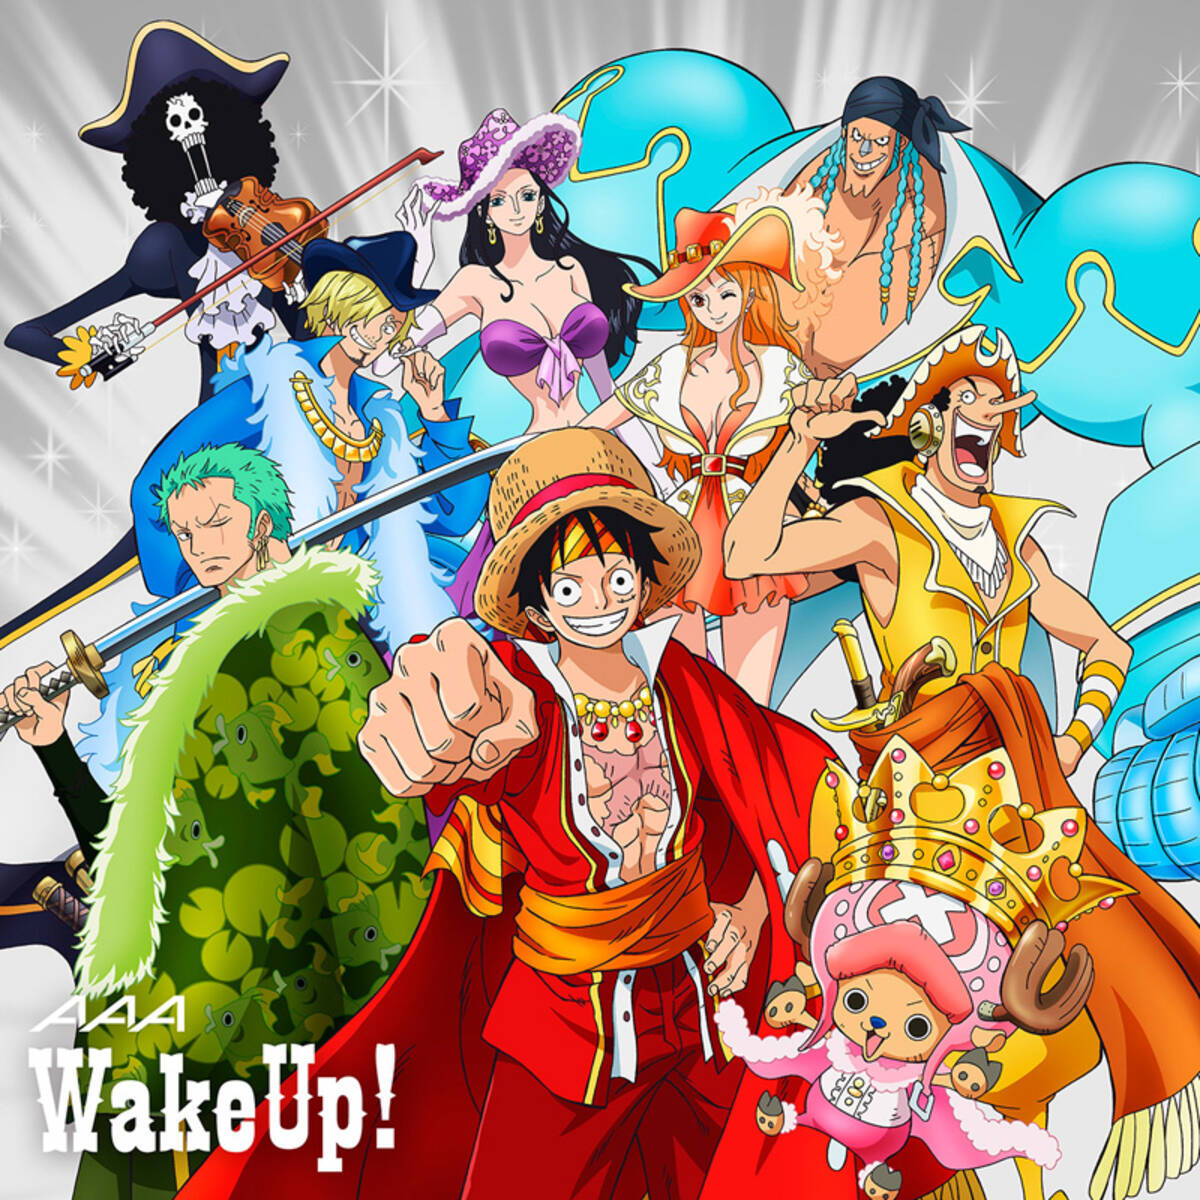 7 2発売のアニメ ワンピース 主題歌sg a Wake Up ワンピース盤のジャケ写解禁 14年5月27日 エキサイトニュース